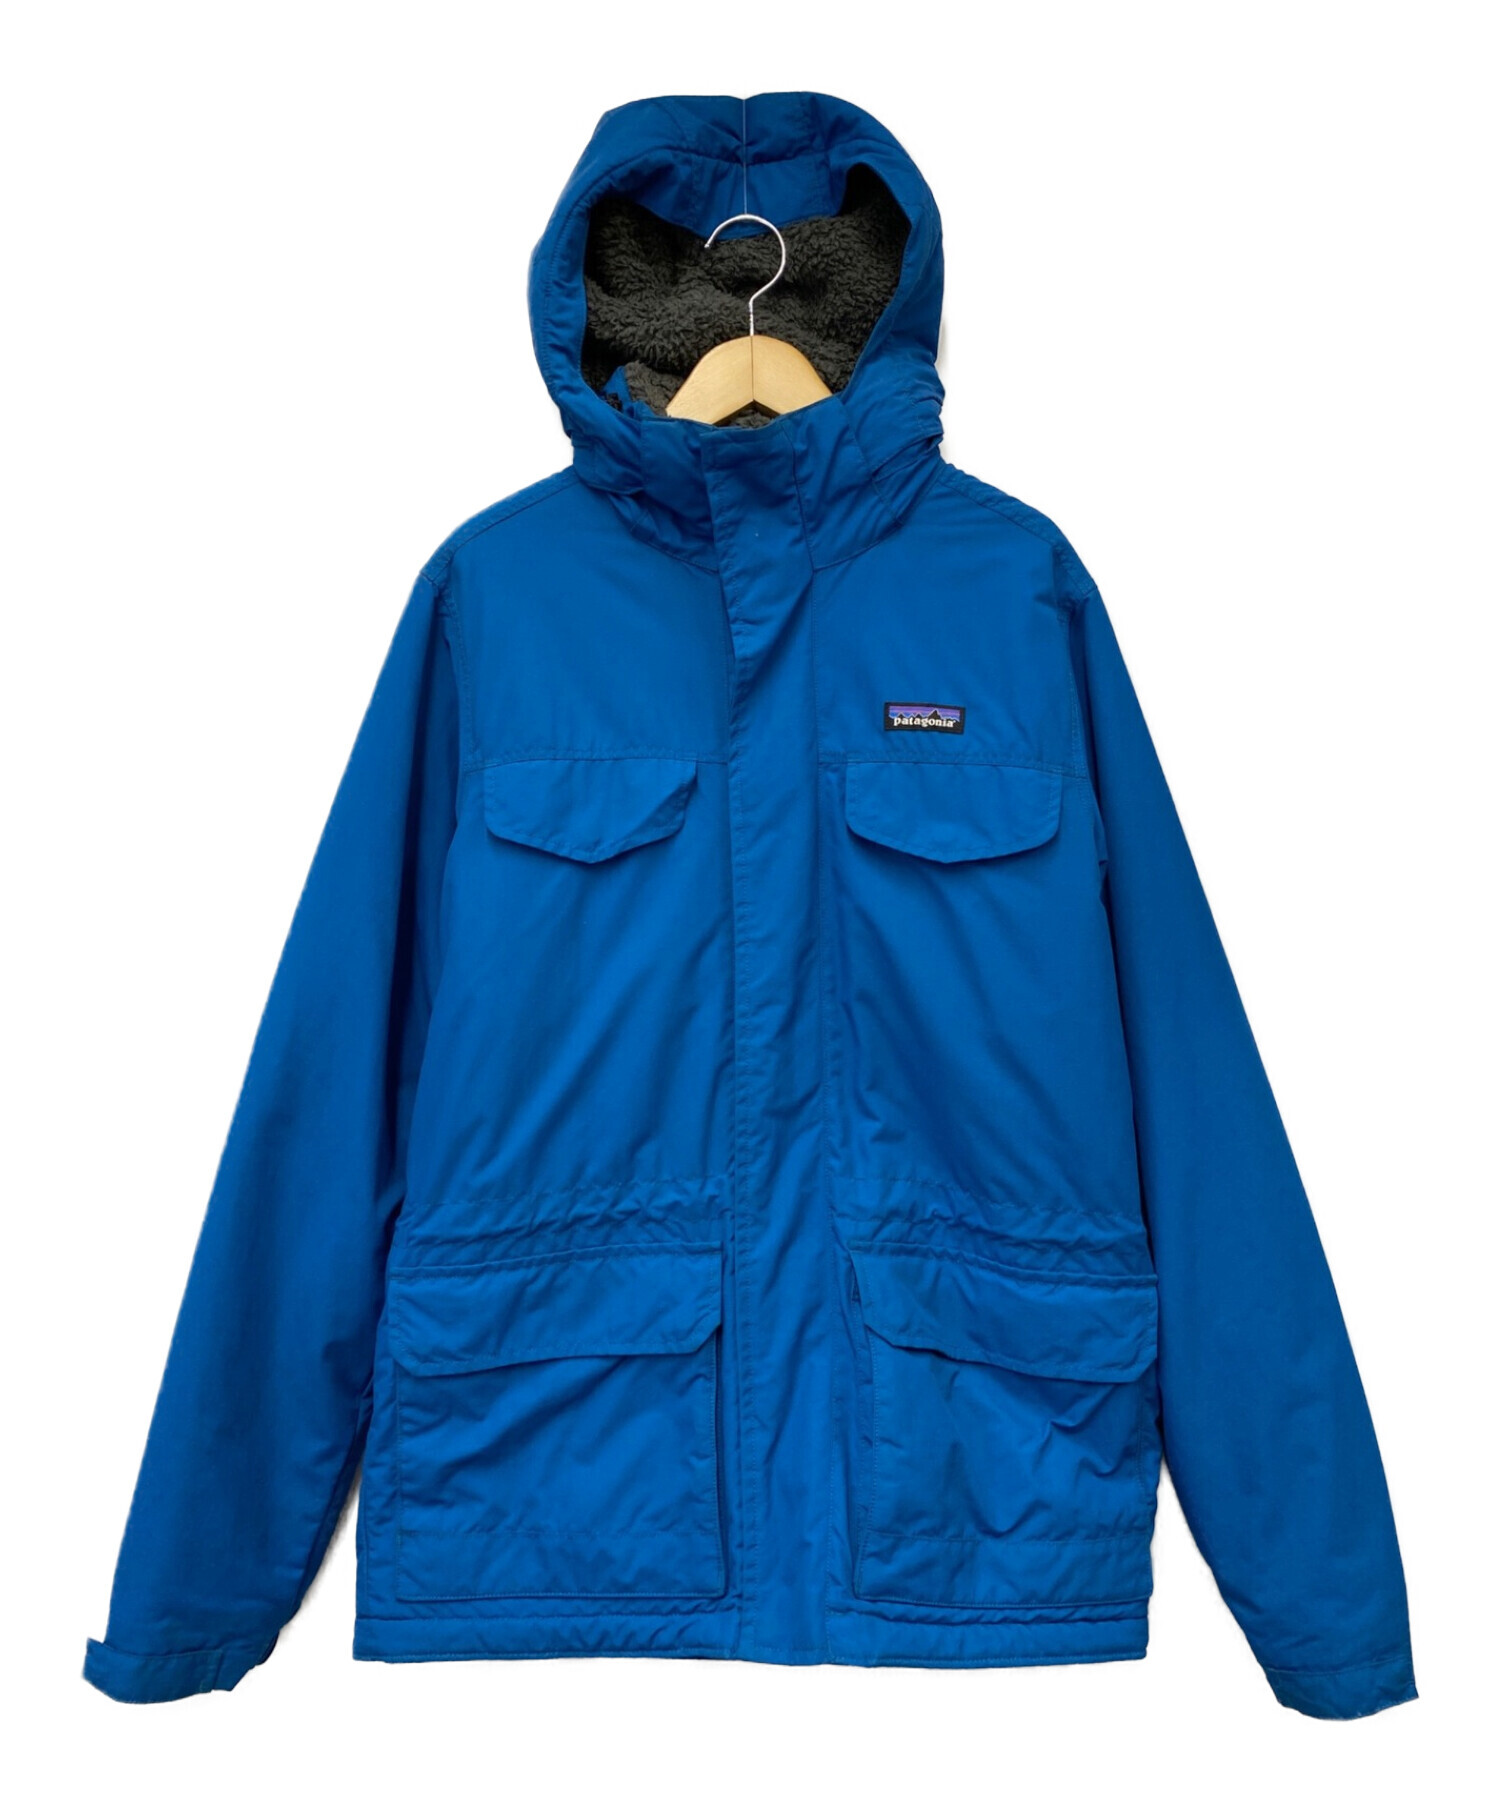 Patagonia (パタゴニア) イスマスパーカジャケット ブルー サイズ:S